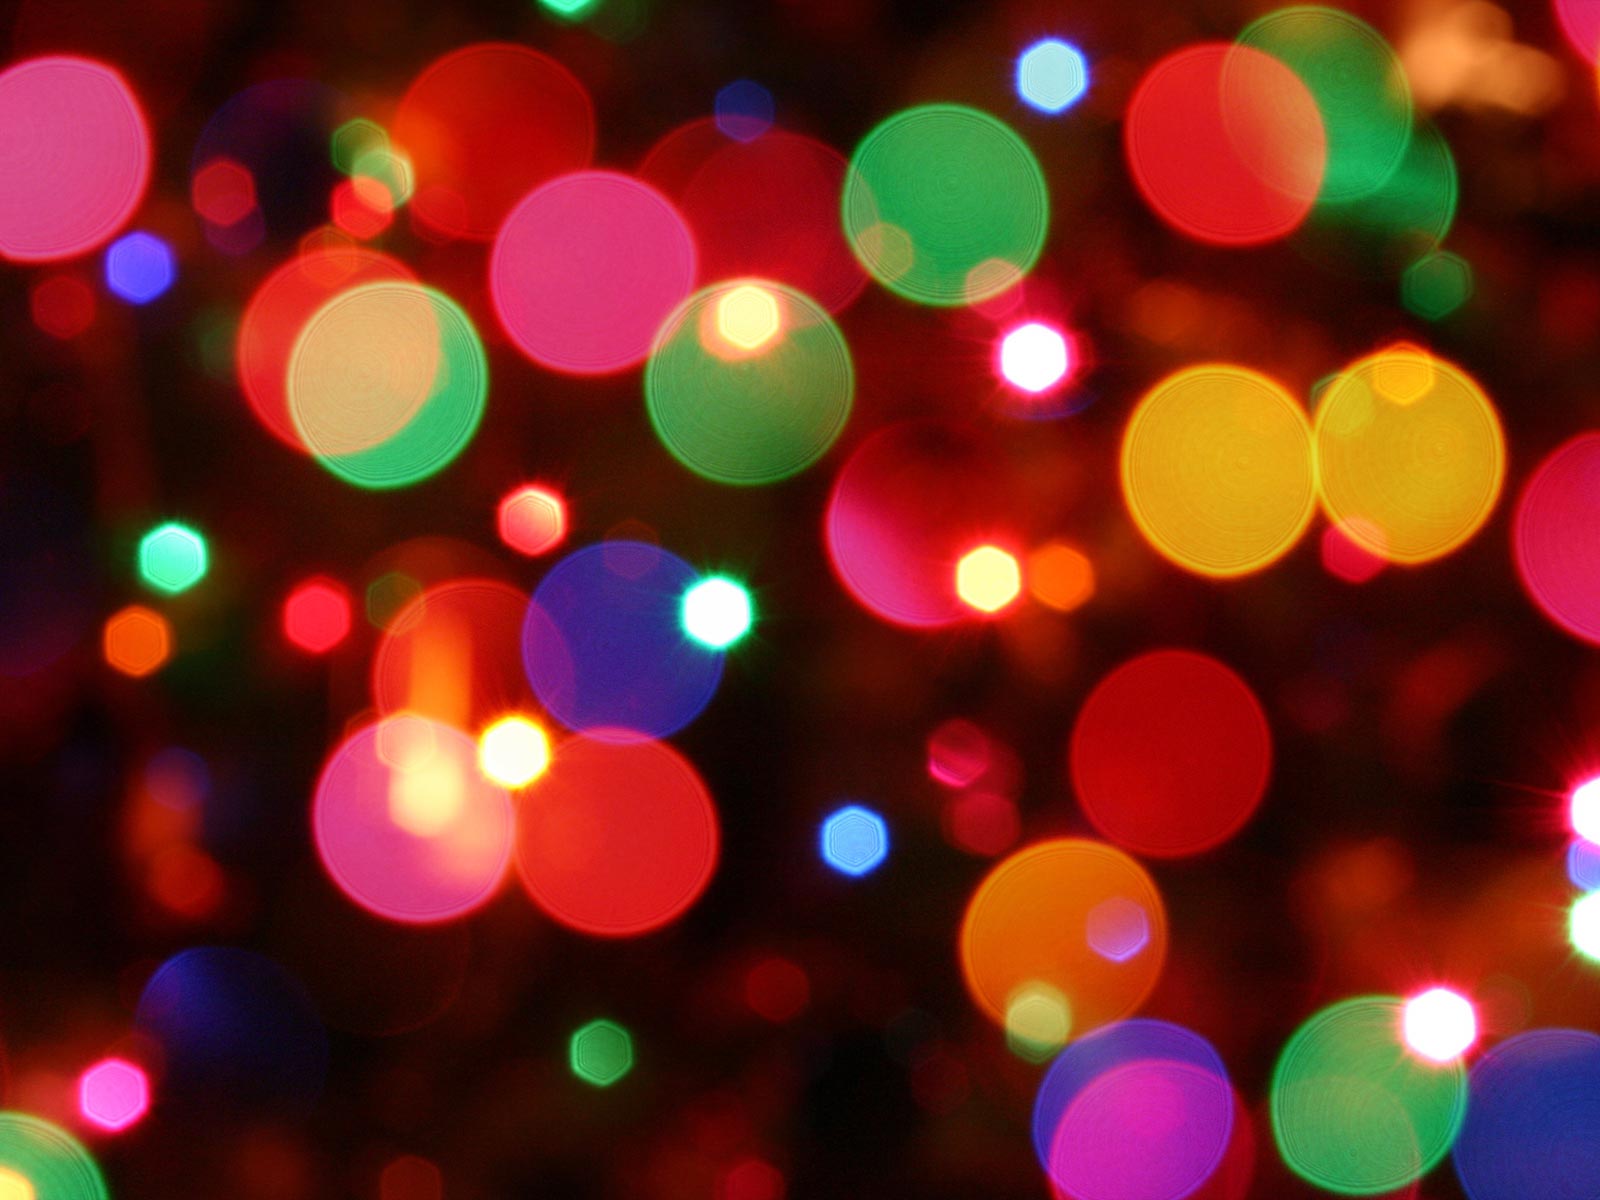 Las luces de navidad El Tiempo - imagenes luces de navidad